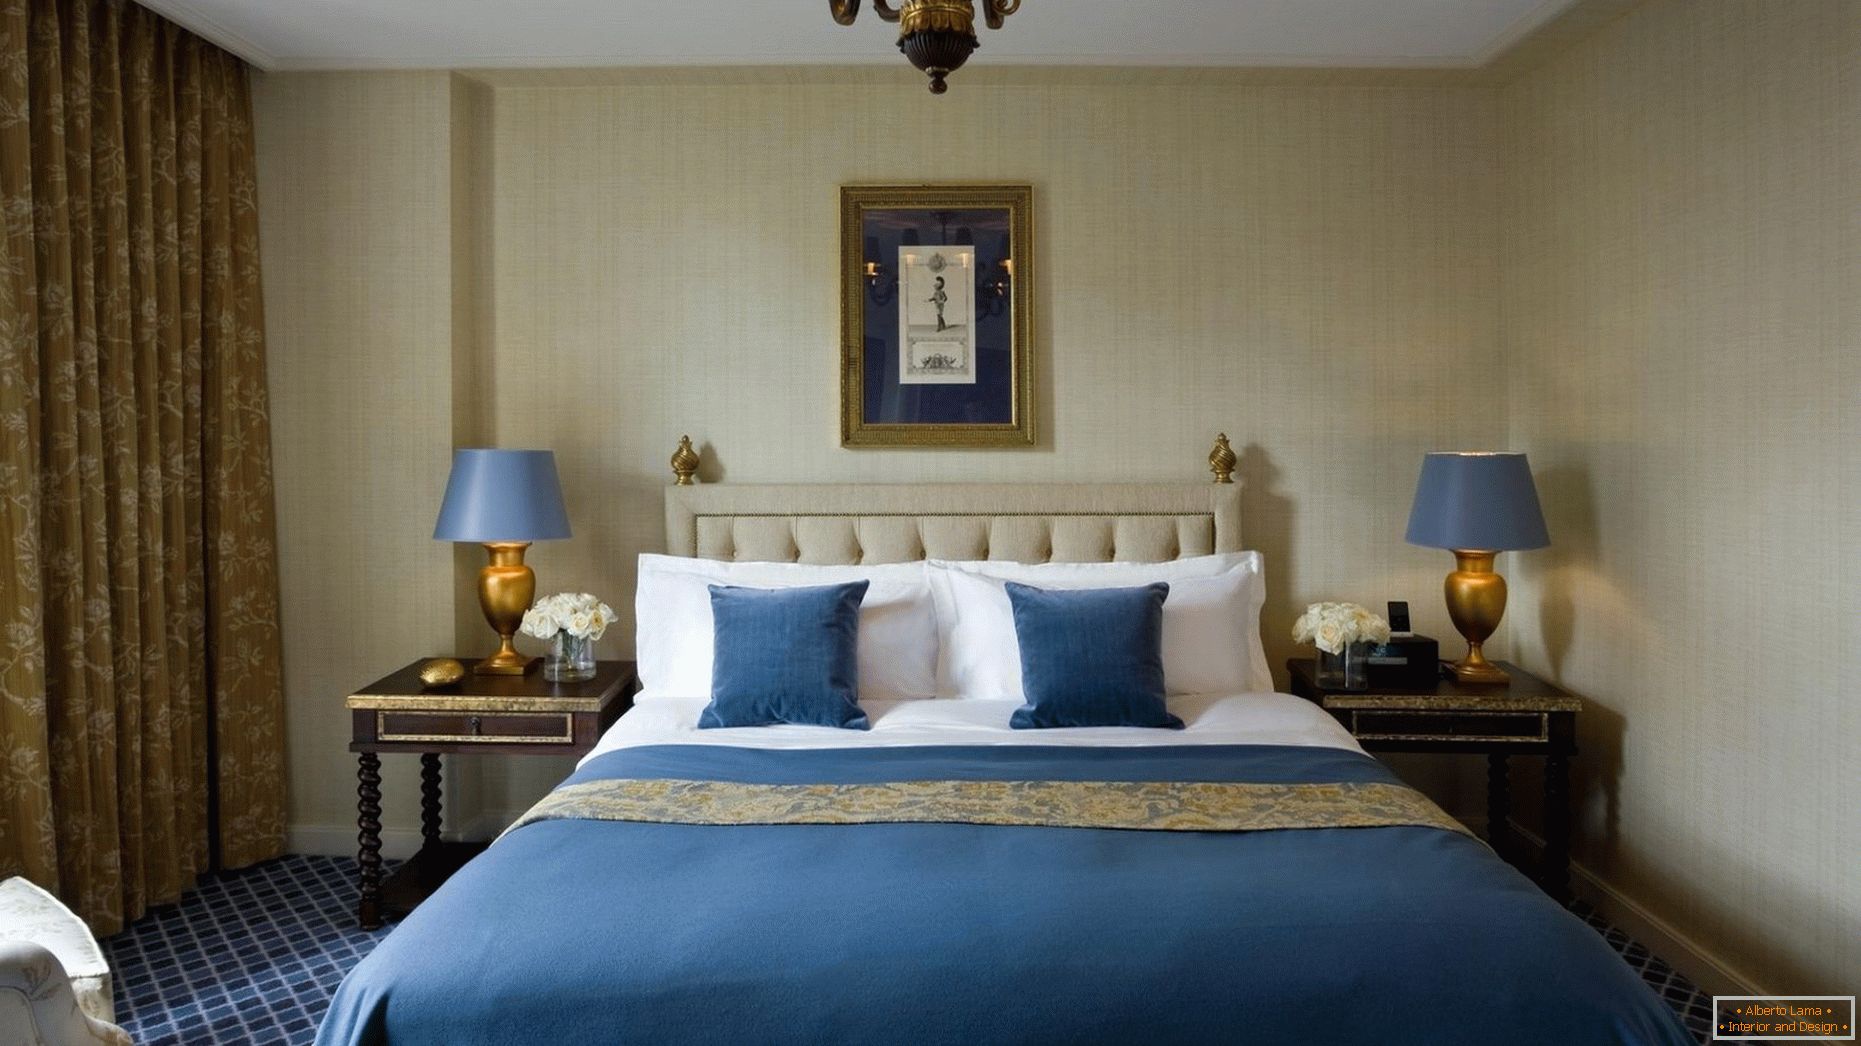 Modré a zlaté odstíny v interiéru ložnice